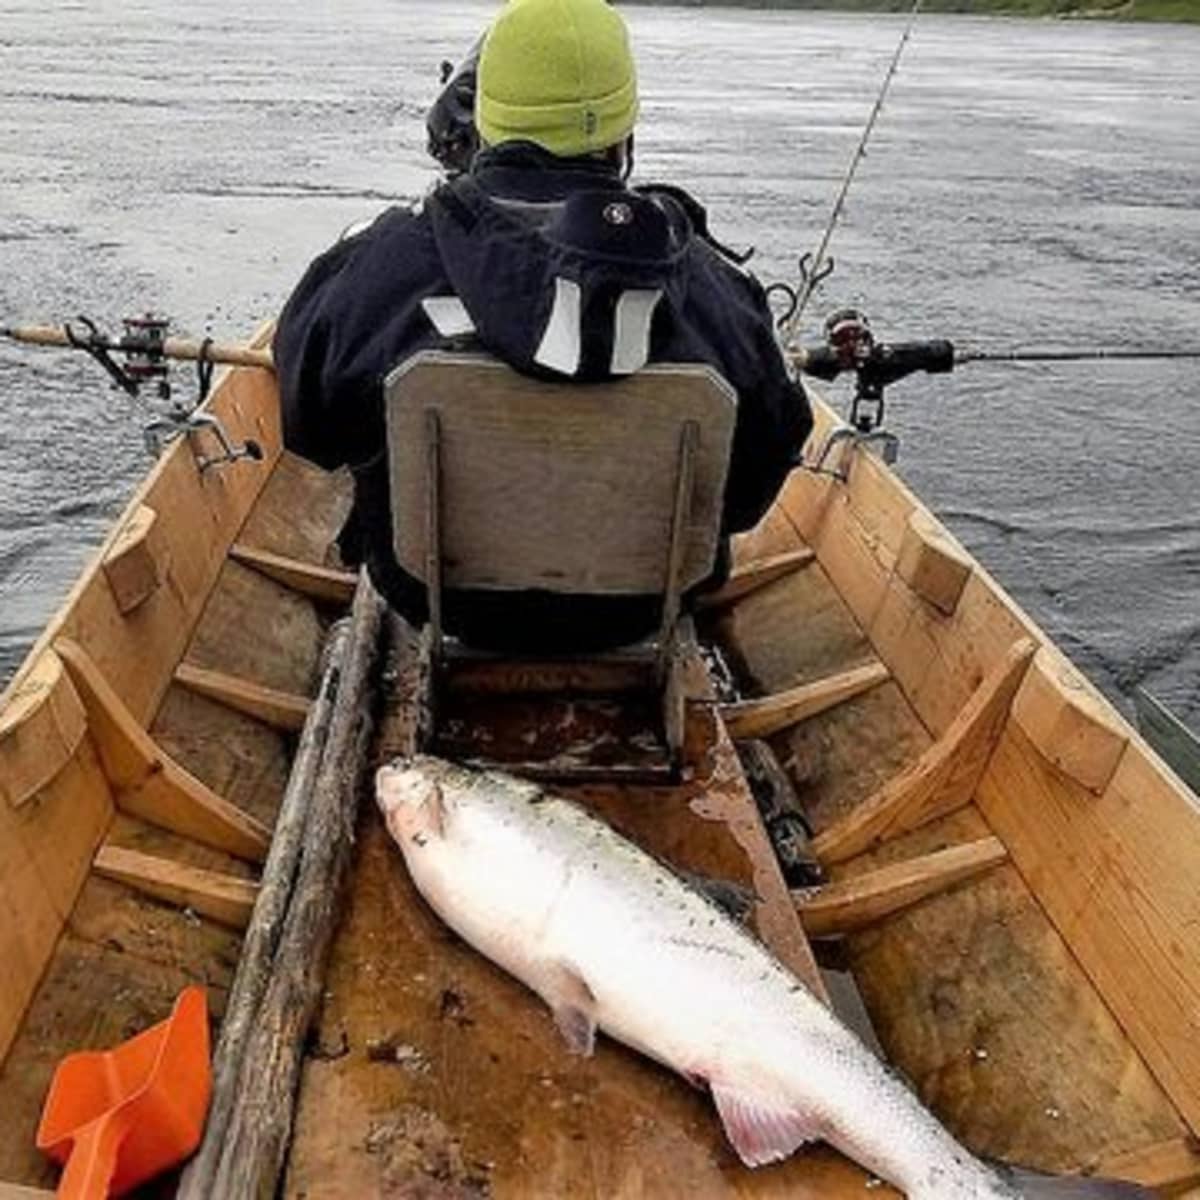 CANOE KAYAK FOUR FLADEN  FISHING ROD HOLDER FLUSH ANGLED FOR BOAT 